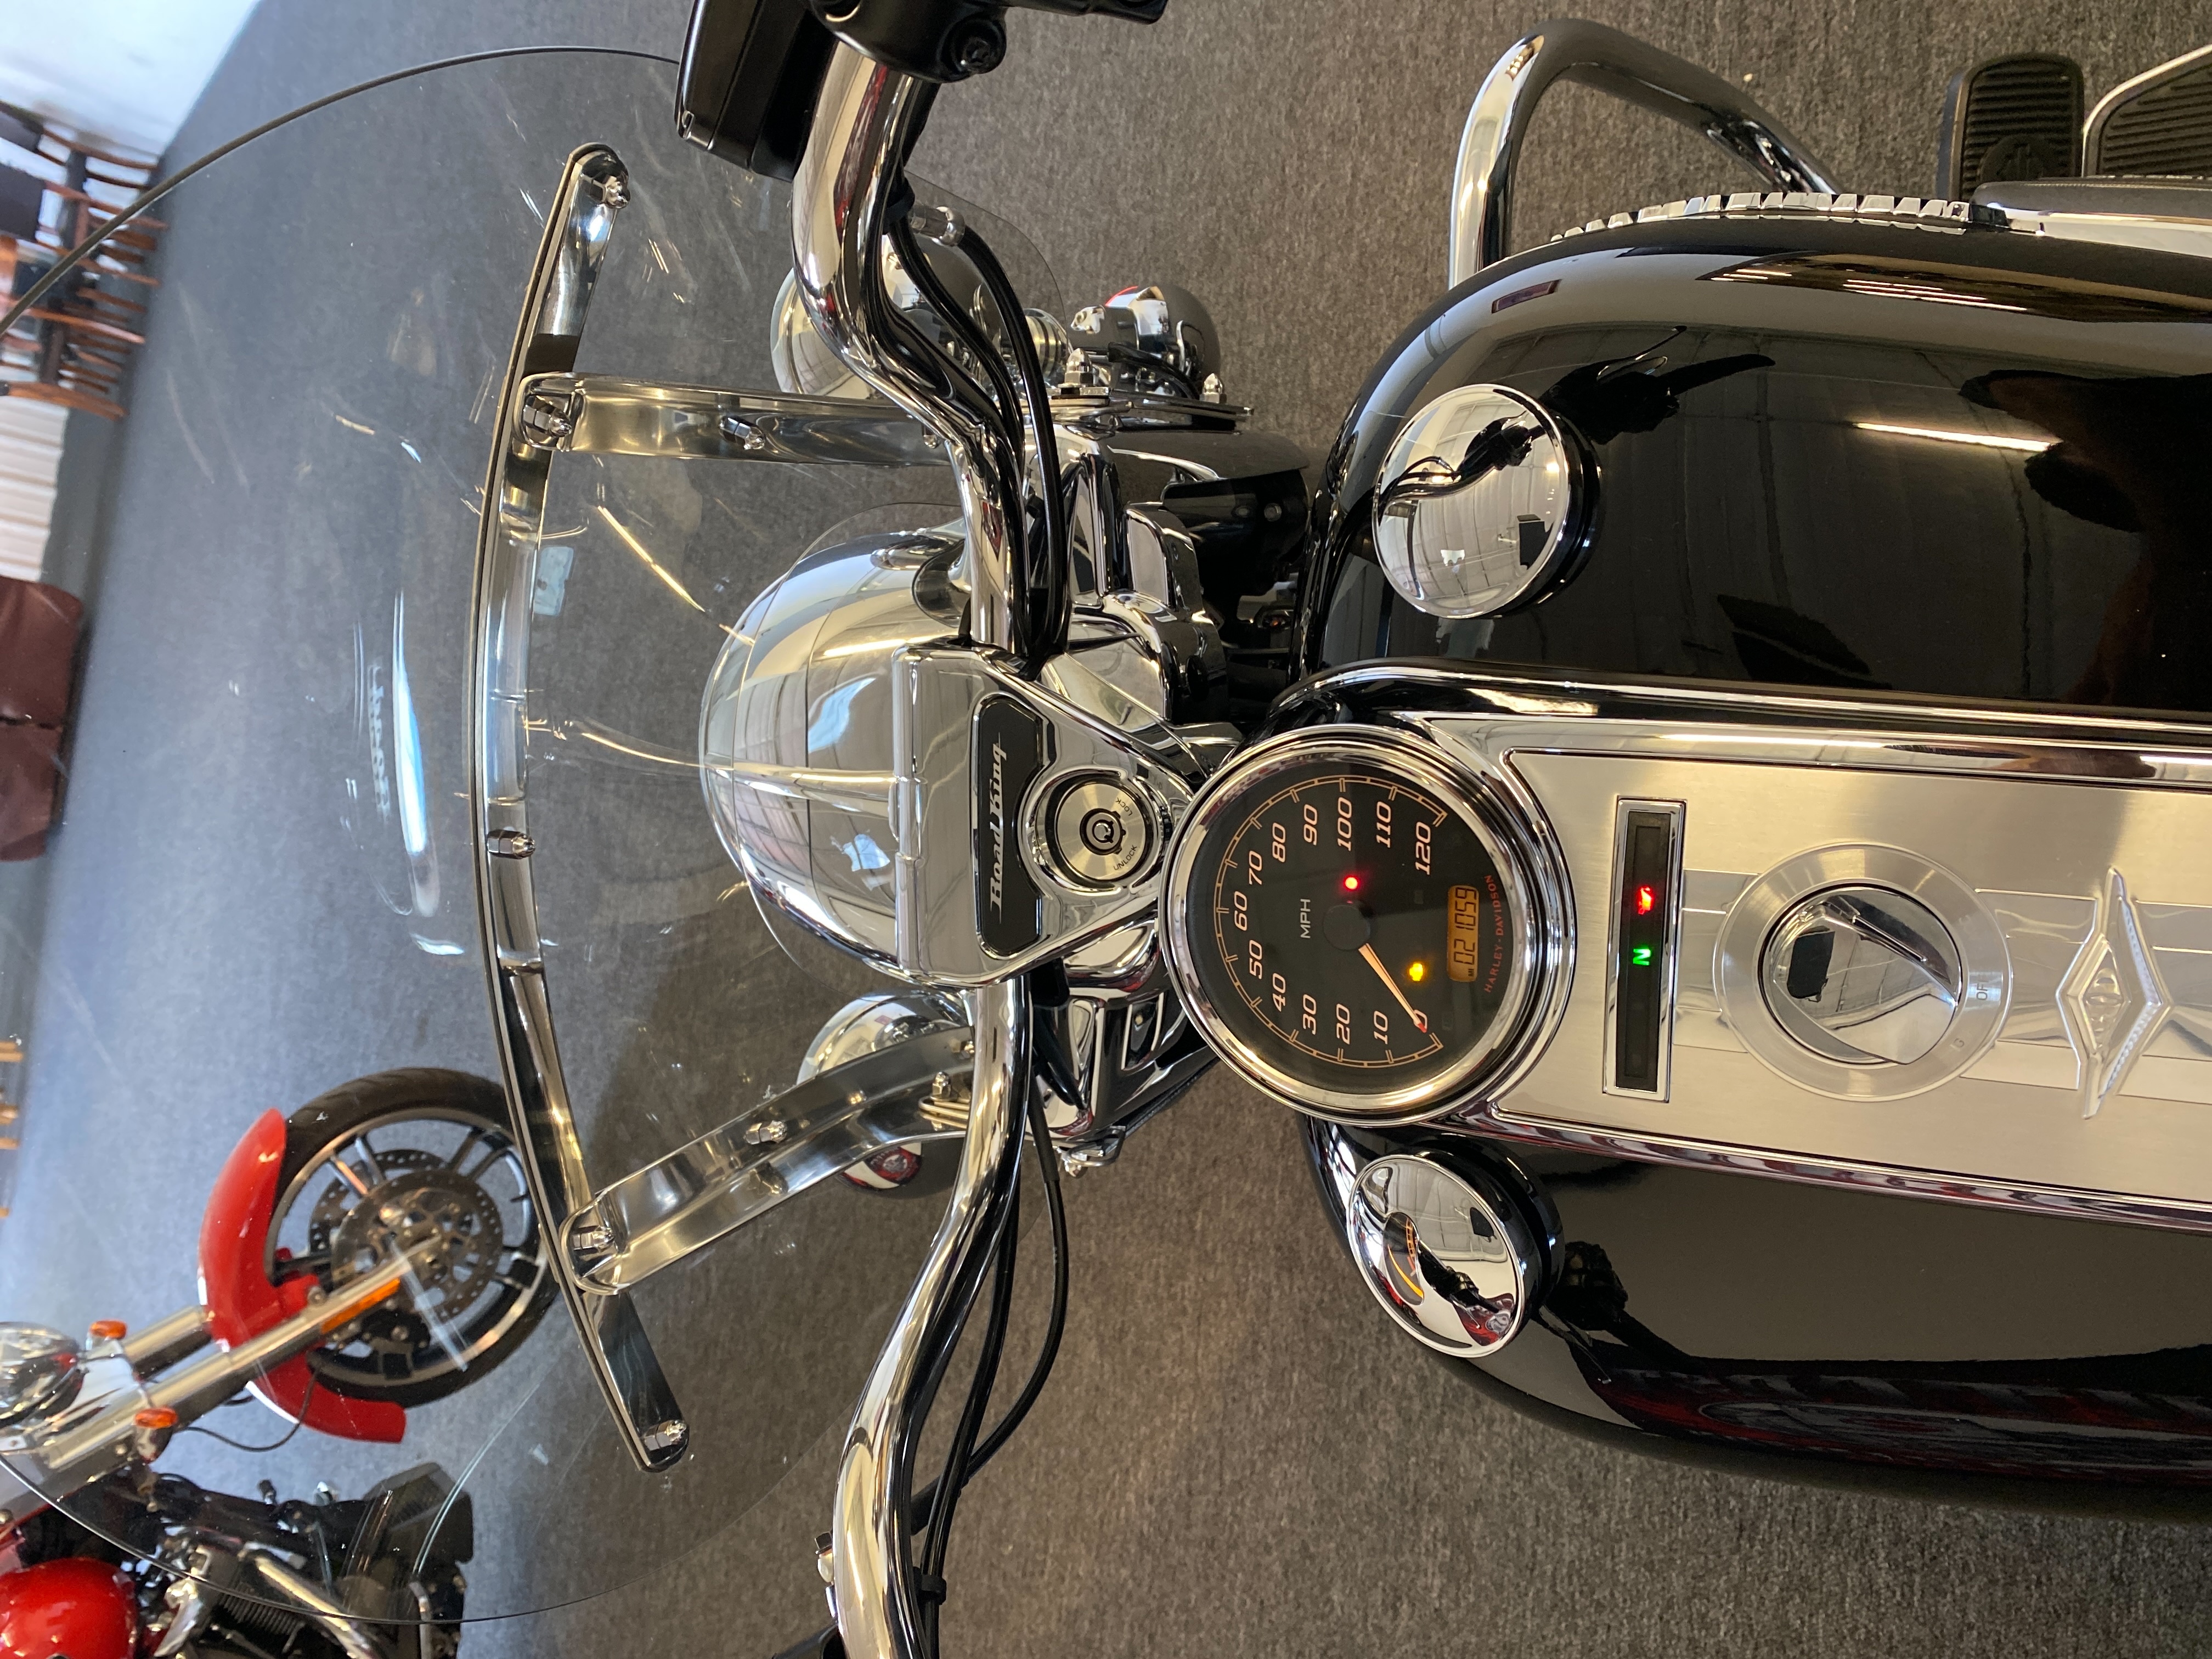 2019 Harley-Davidson Road King Base at Outpost Harley-Davidson